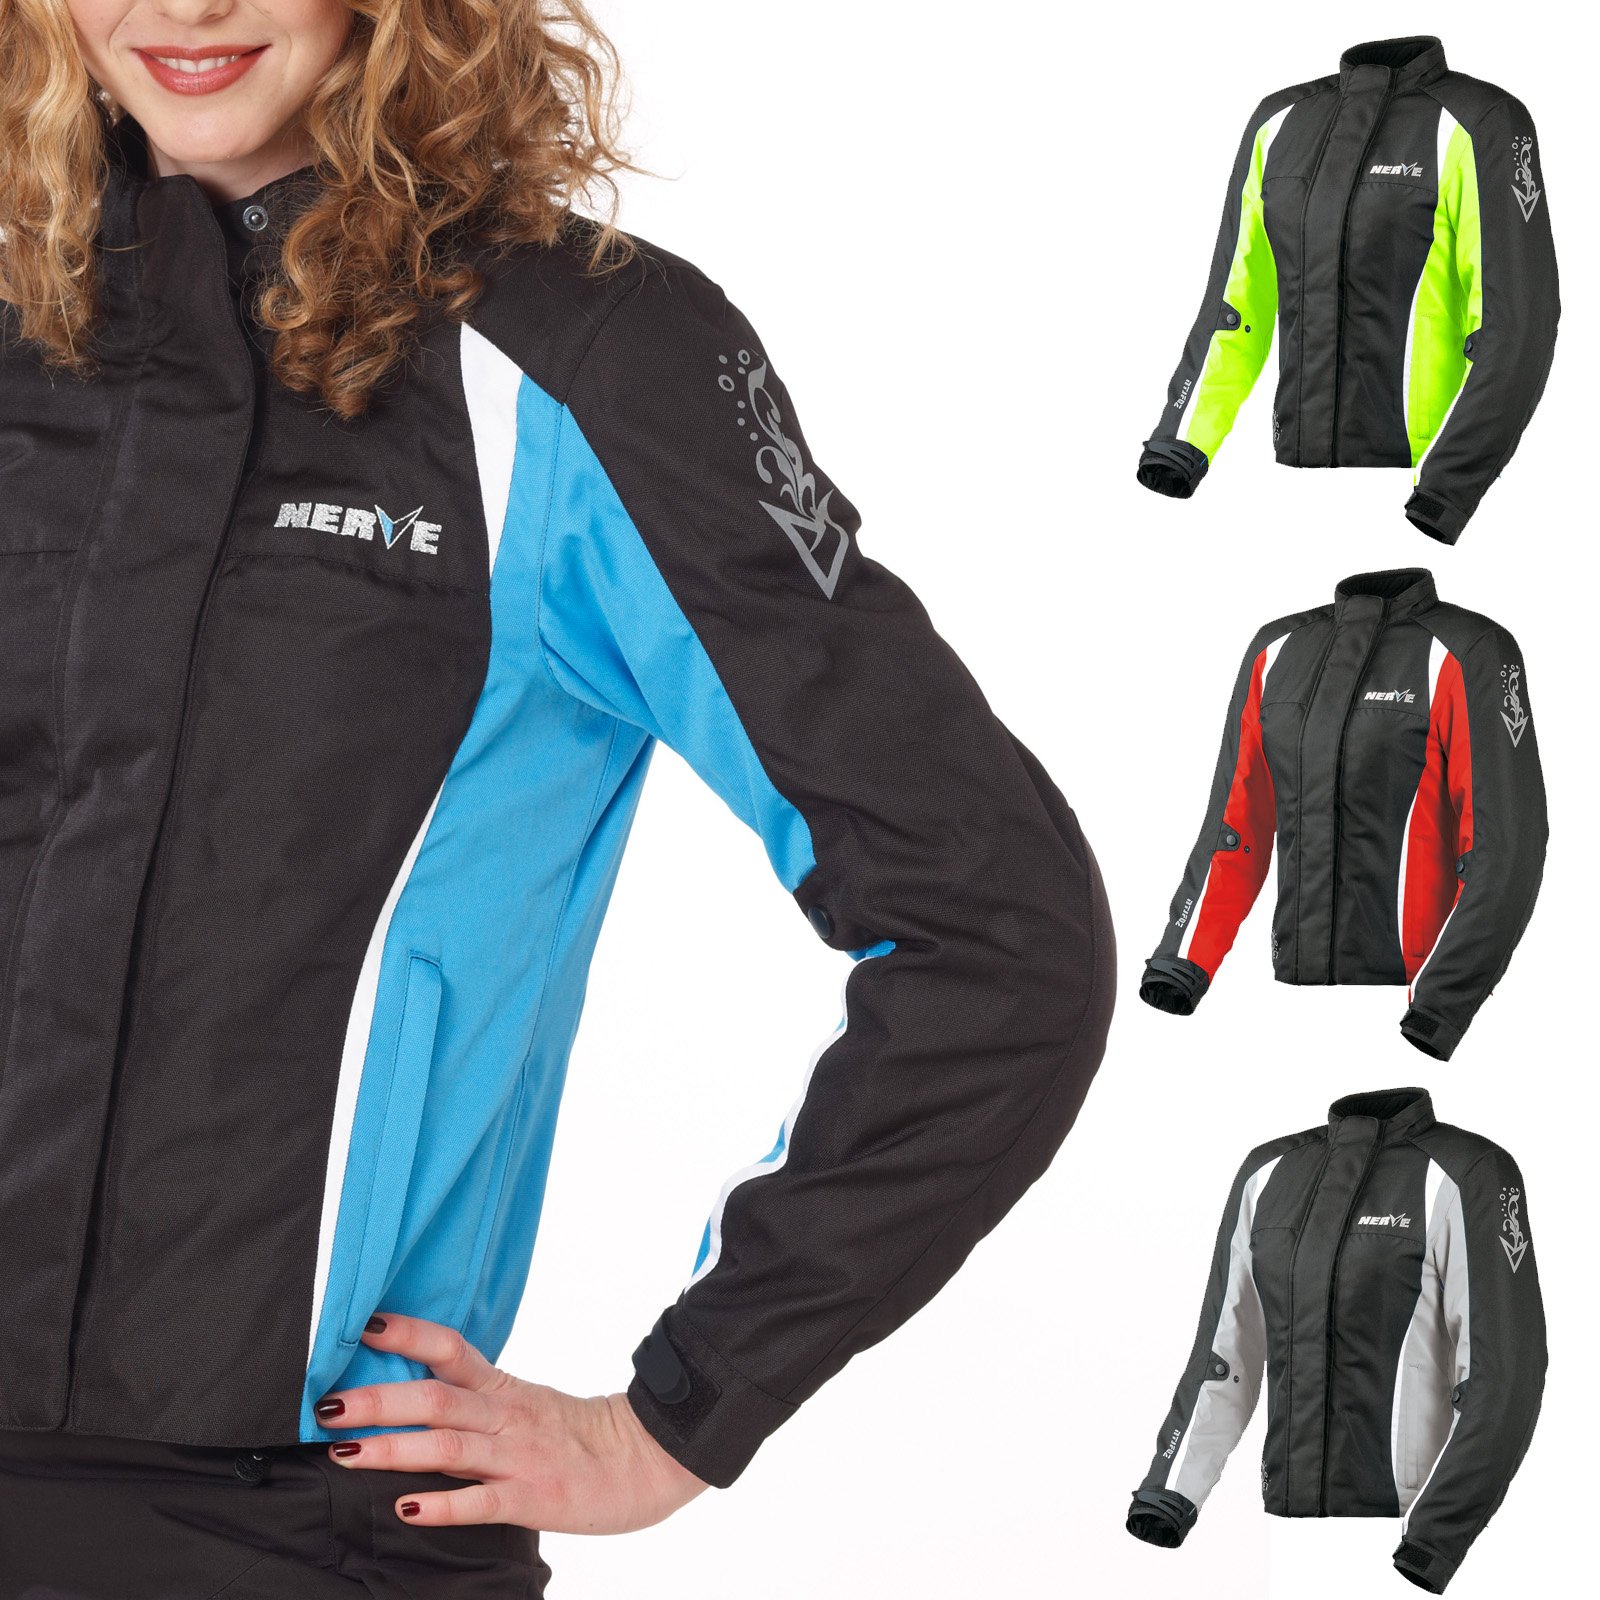 Nerve Shop Motorradjacke -Unique- Motorrad Damen Wasserdicht Jacke mit Protektoren Sommer Winter Textil Frauen - schwarz-blau - 38